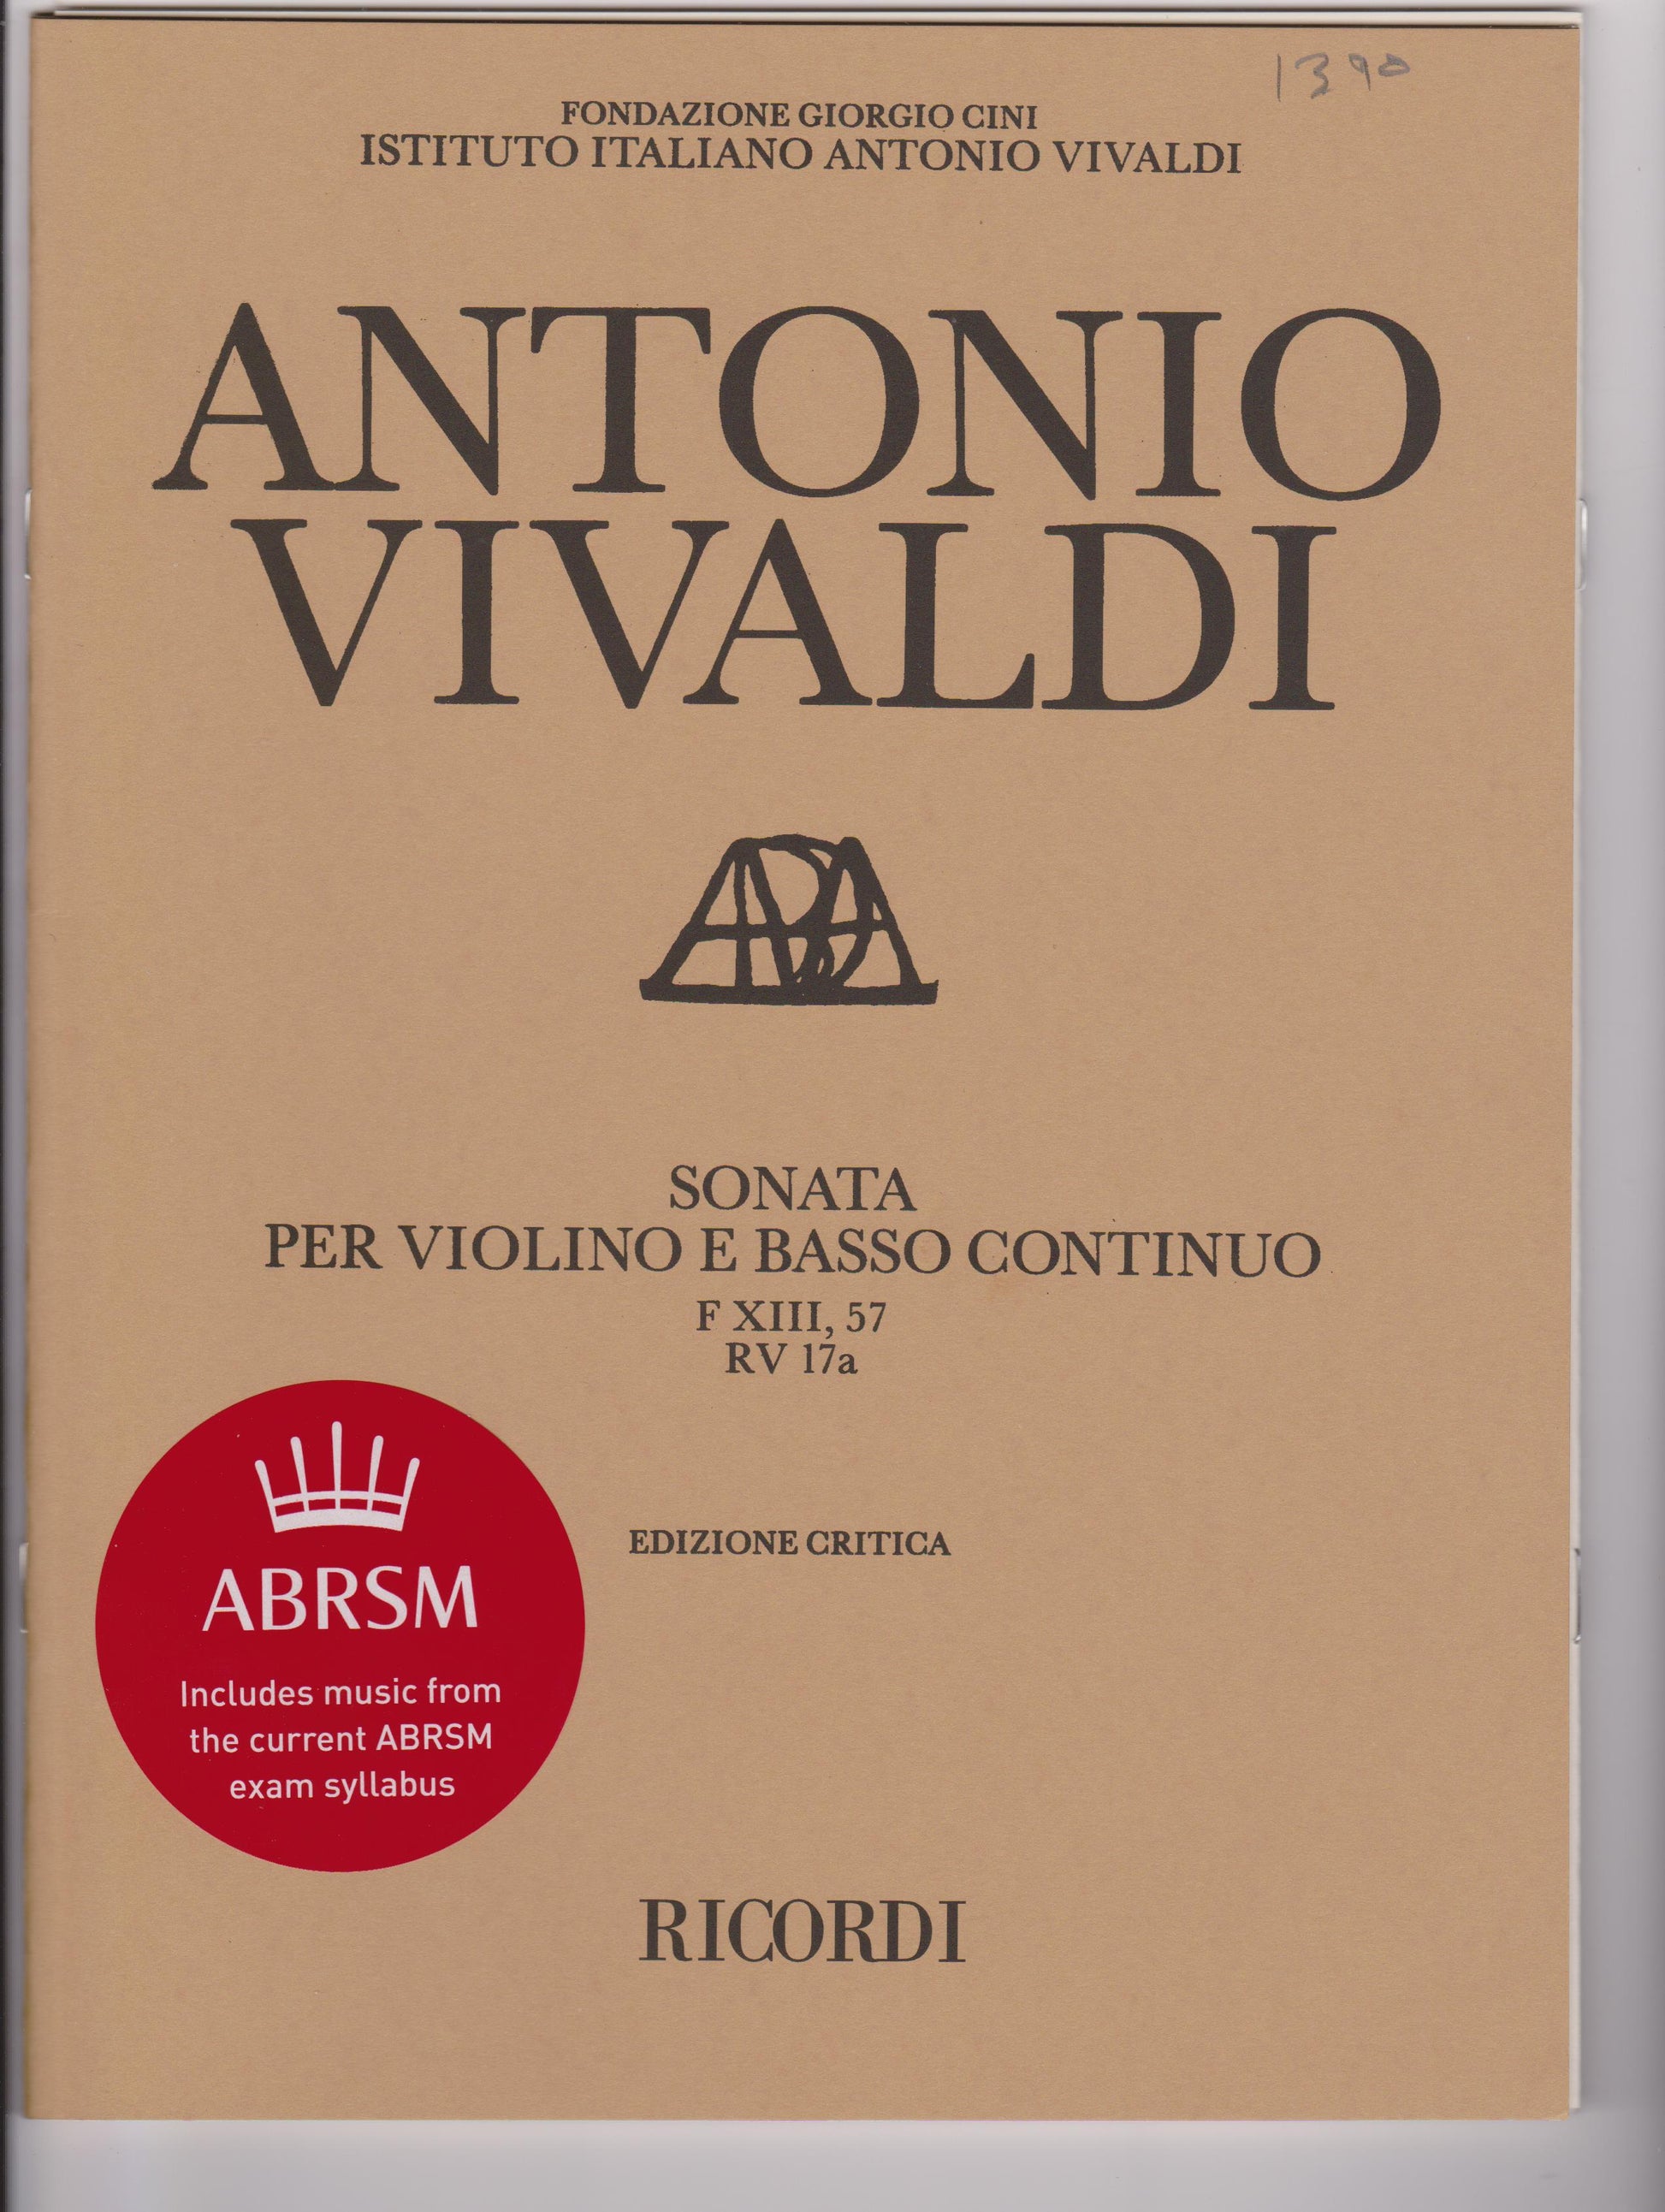 Vivaldi - Sonata in E minor for violin and basso continuo, RV 17a